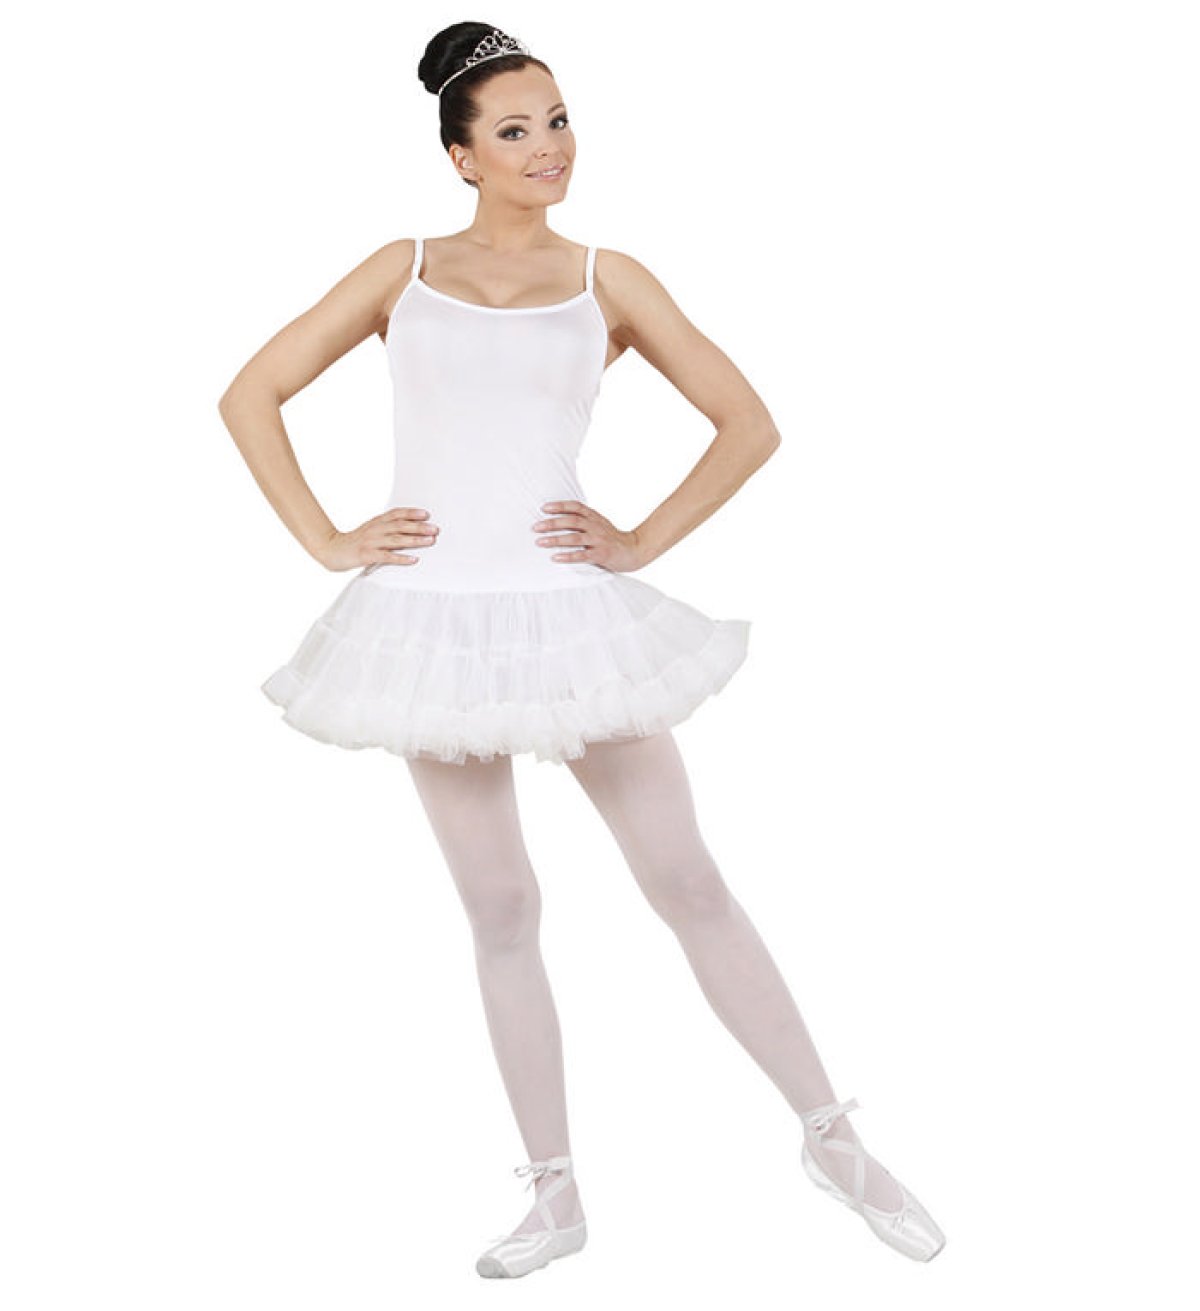 Køb Smuk Hvid Ballerina til kun 199 kr | Lynhurtig 24t levering |